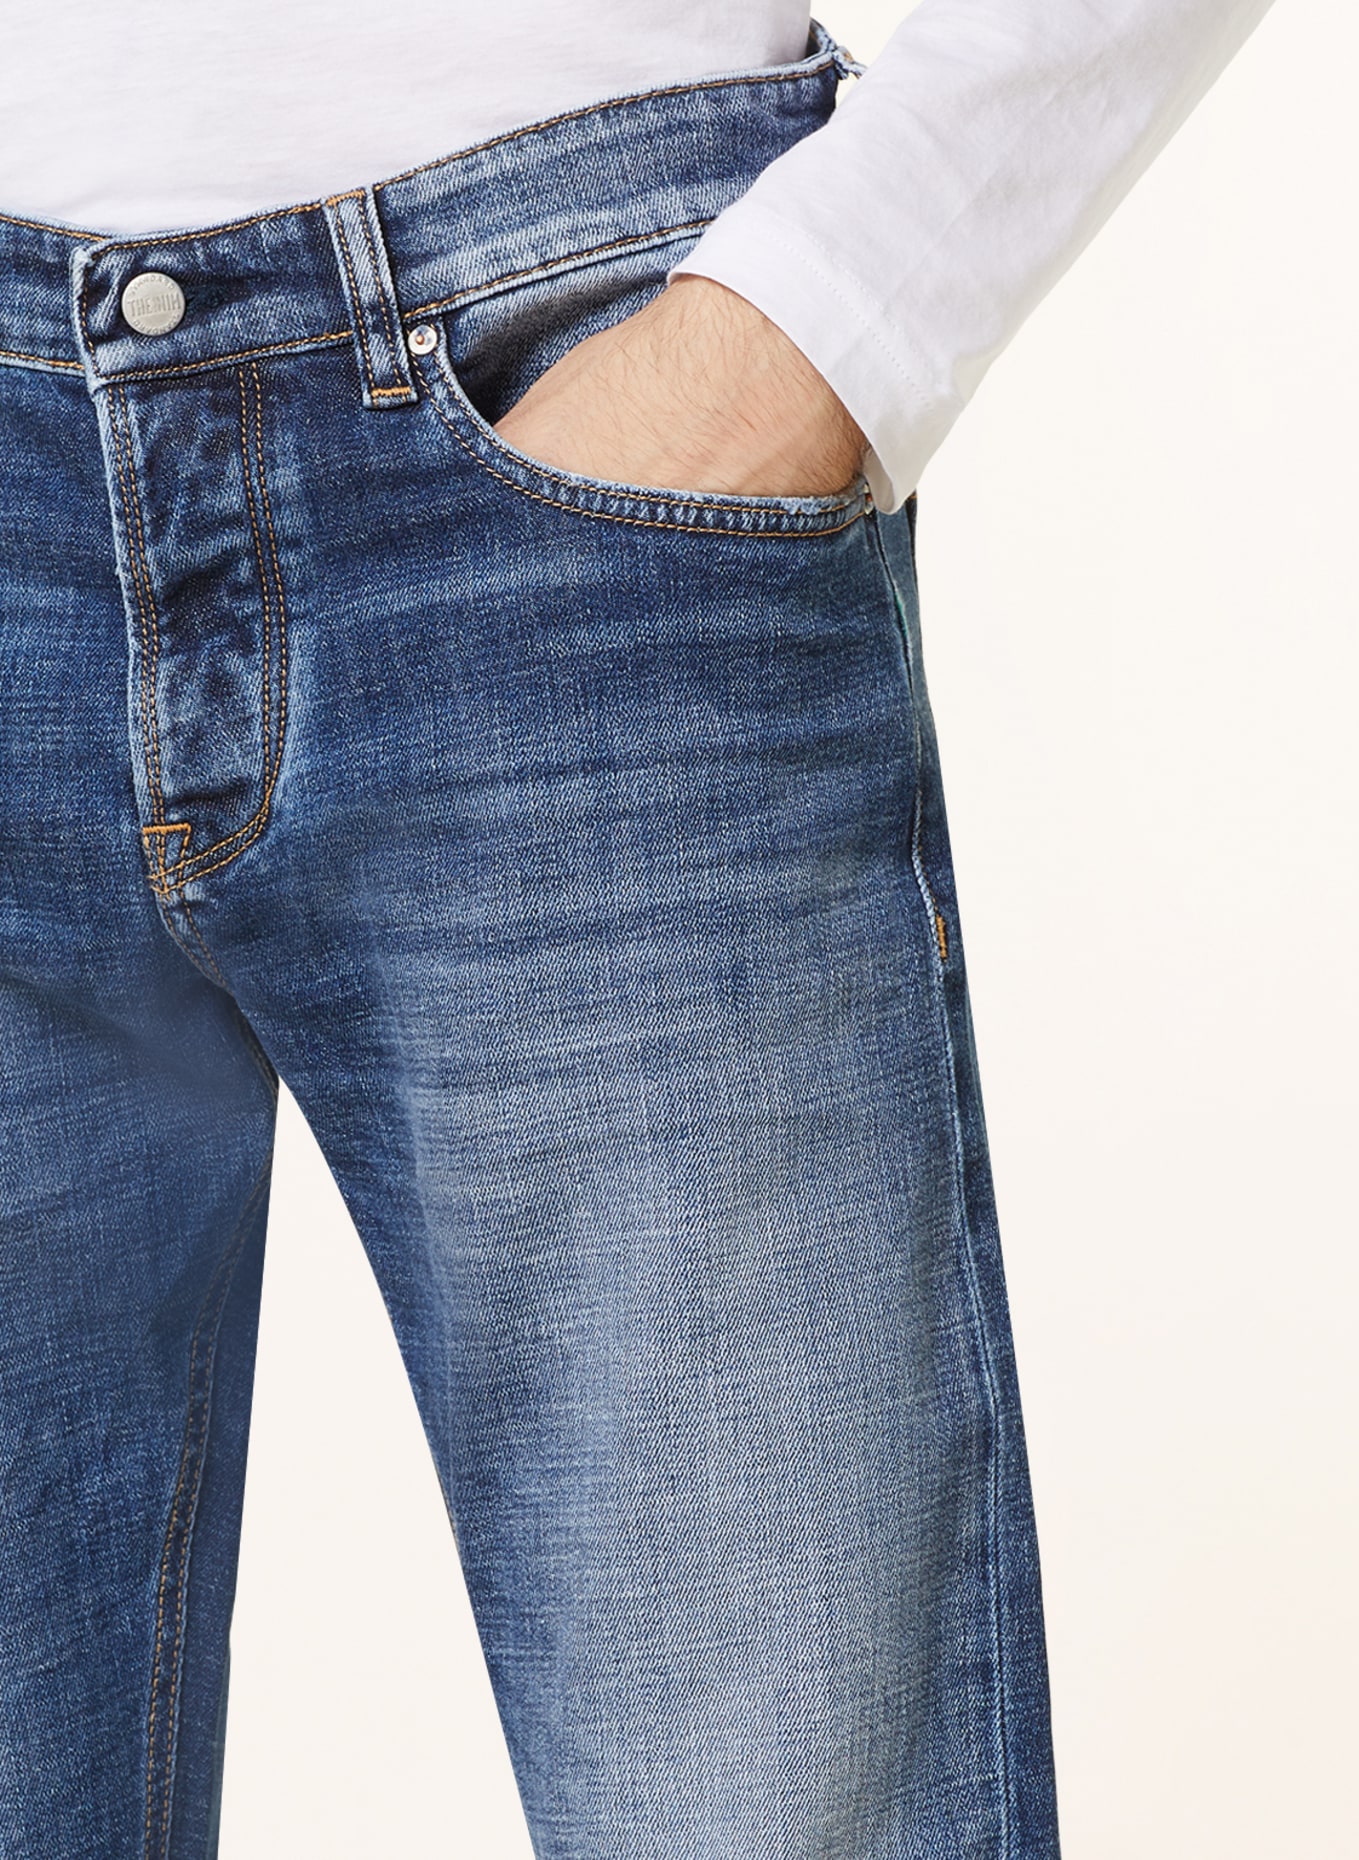 THE.NIM STANDARD Jeans MORRISON Tapered Slim Fit, Farbe: W687-MDB MEDIUM BLUE (Bild 5)